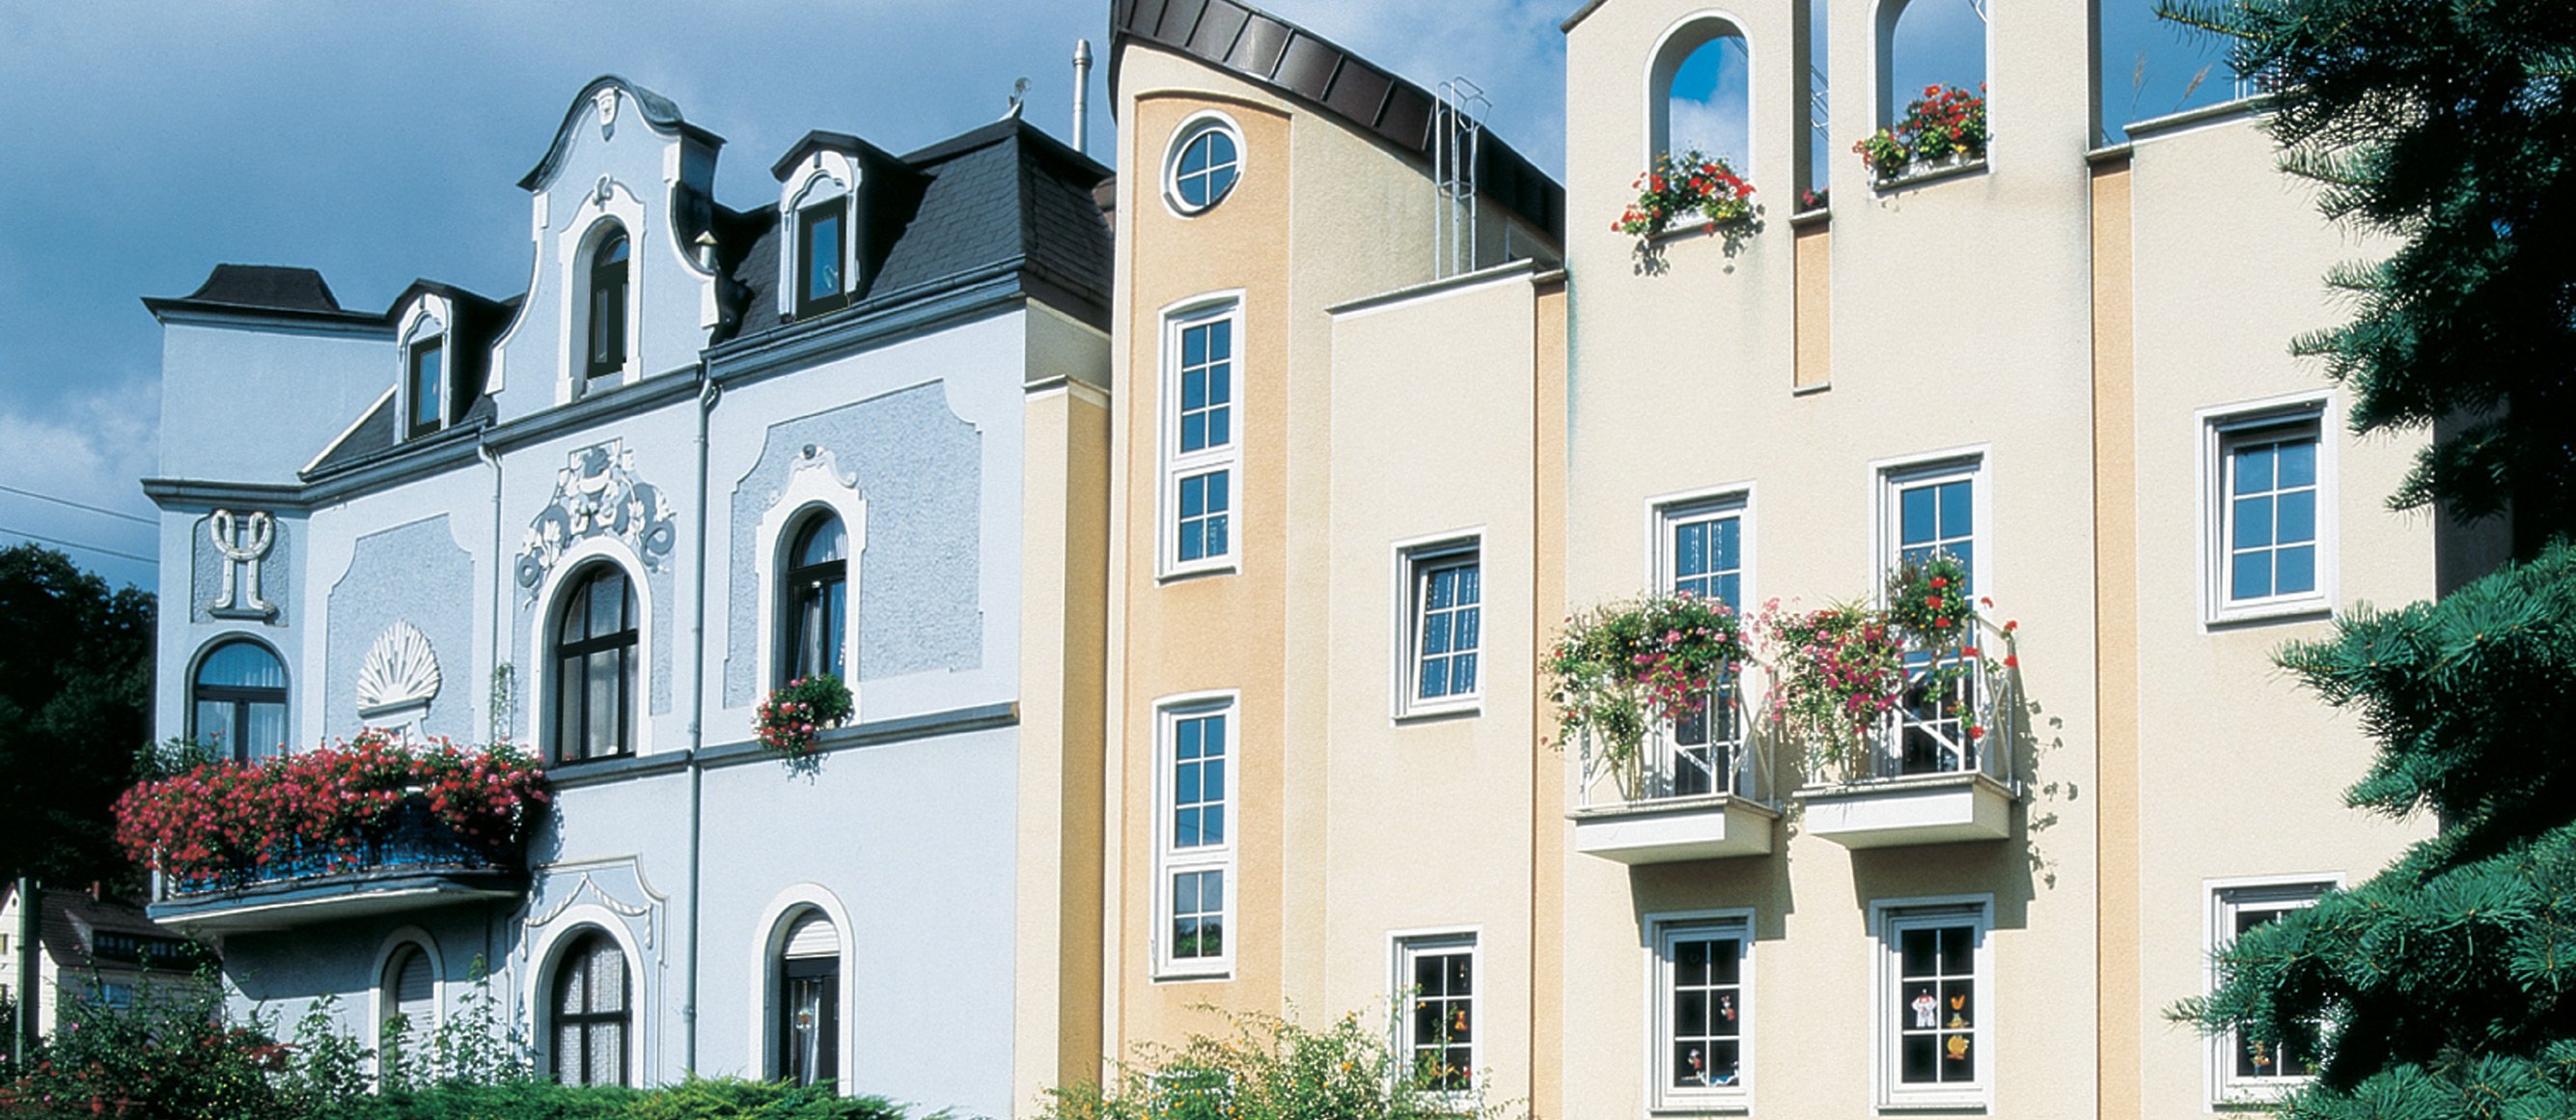 Fenster für Renovierungen - Fensterbau Zitz in Hückelhoven